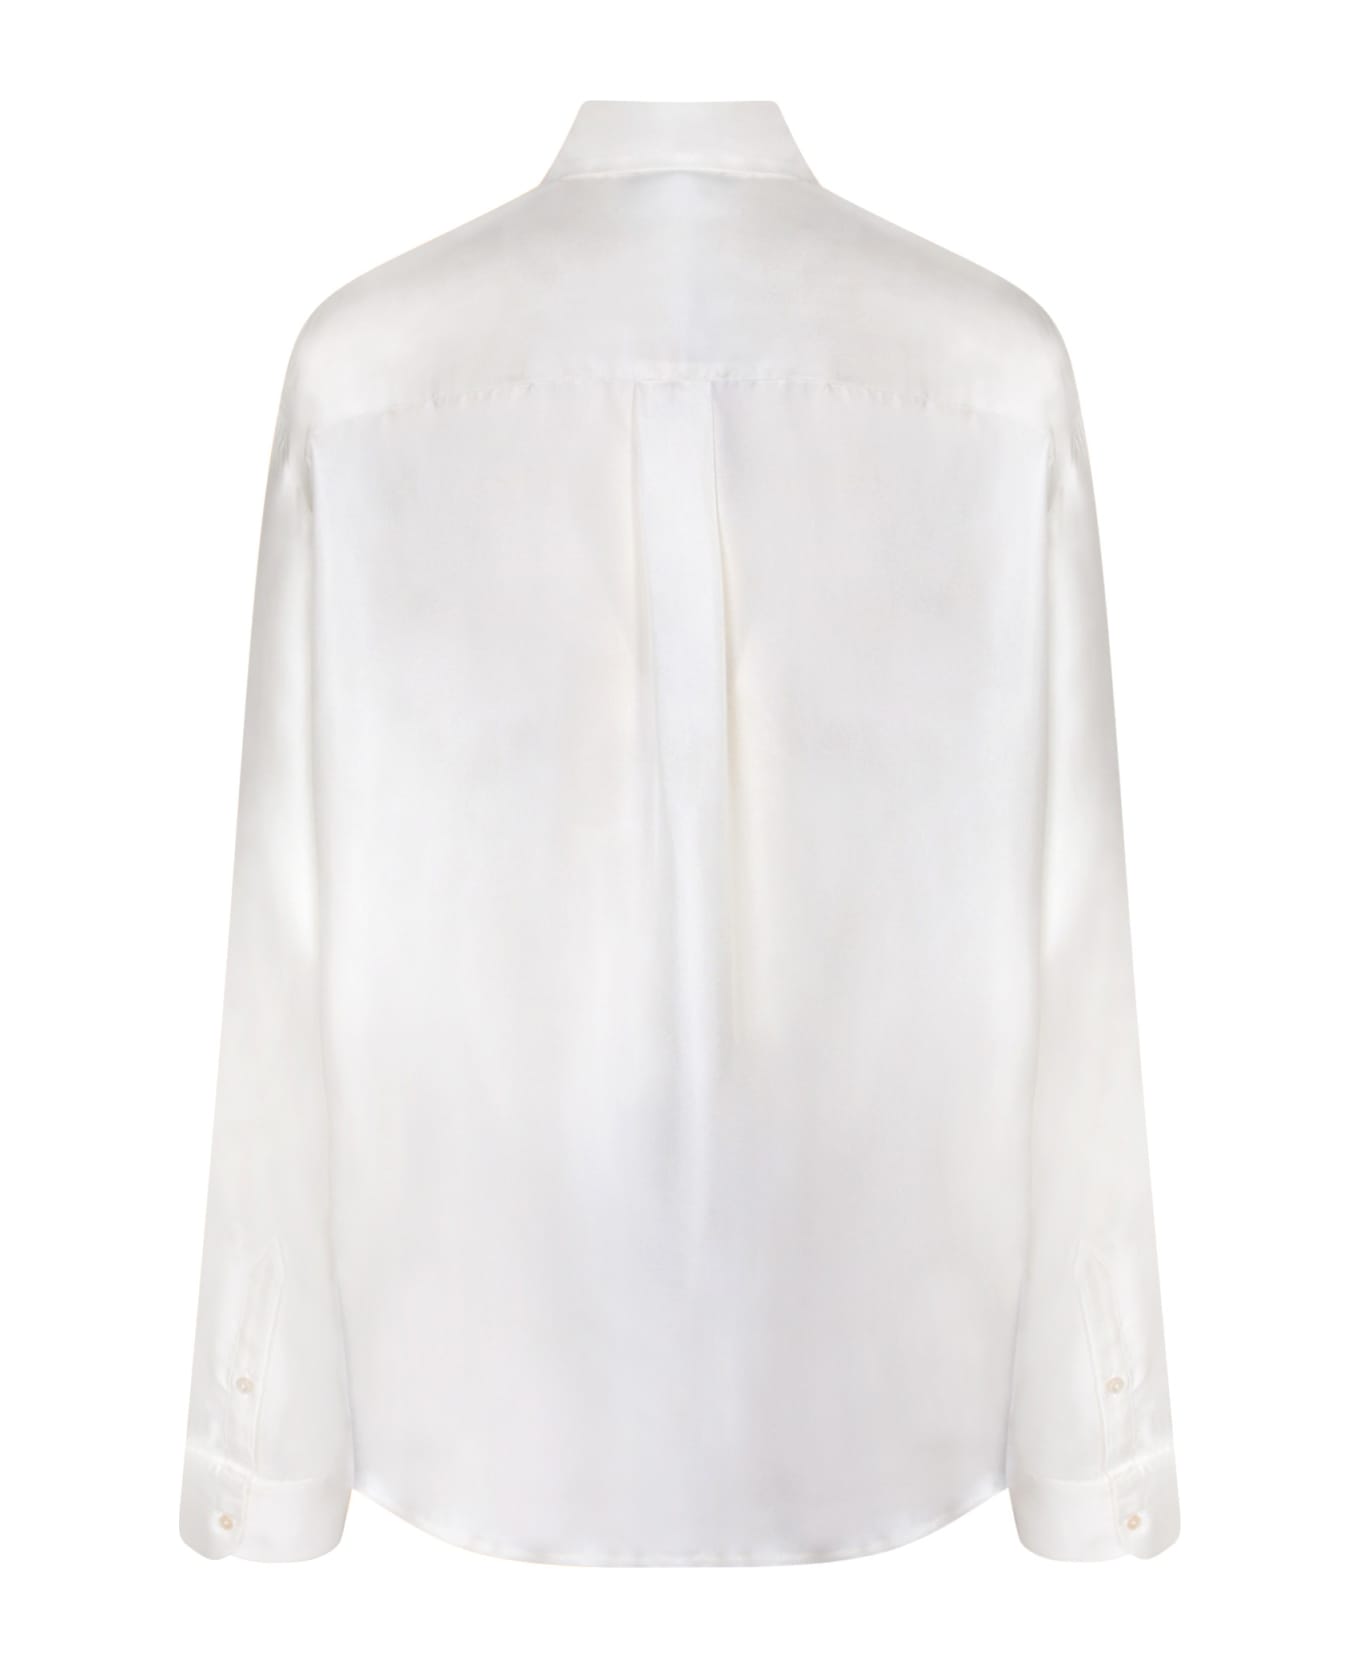 Pierre-Louis Mascia Aloe Organic White/multicolor Shirt - White シャツ